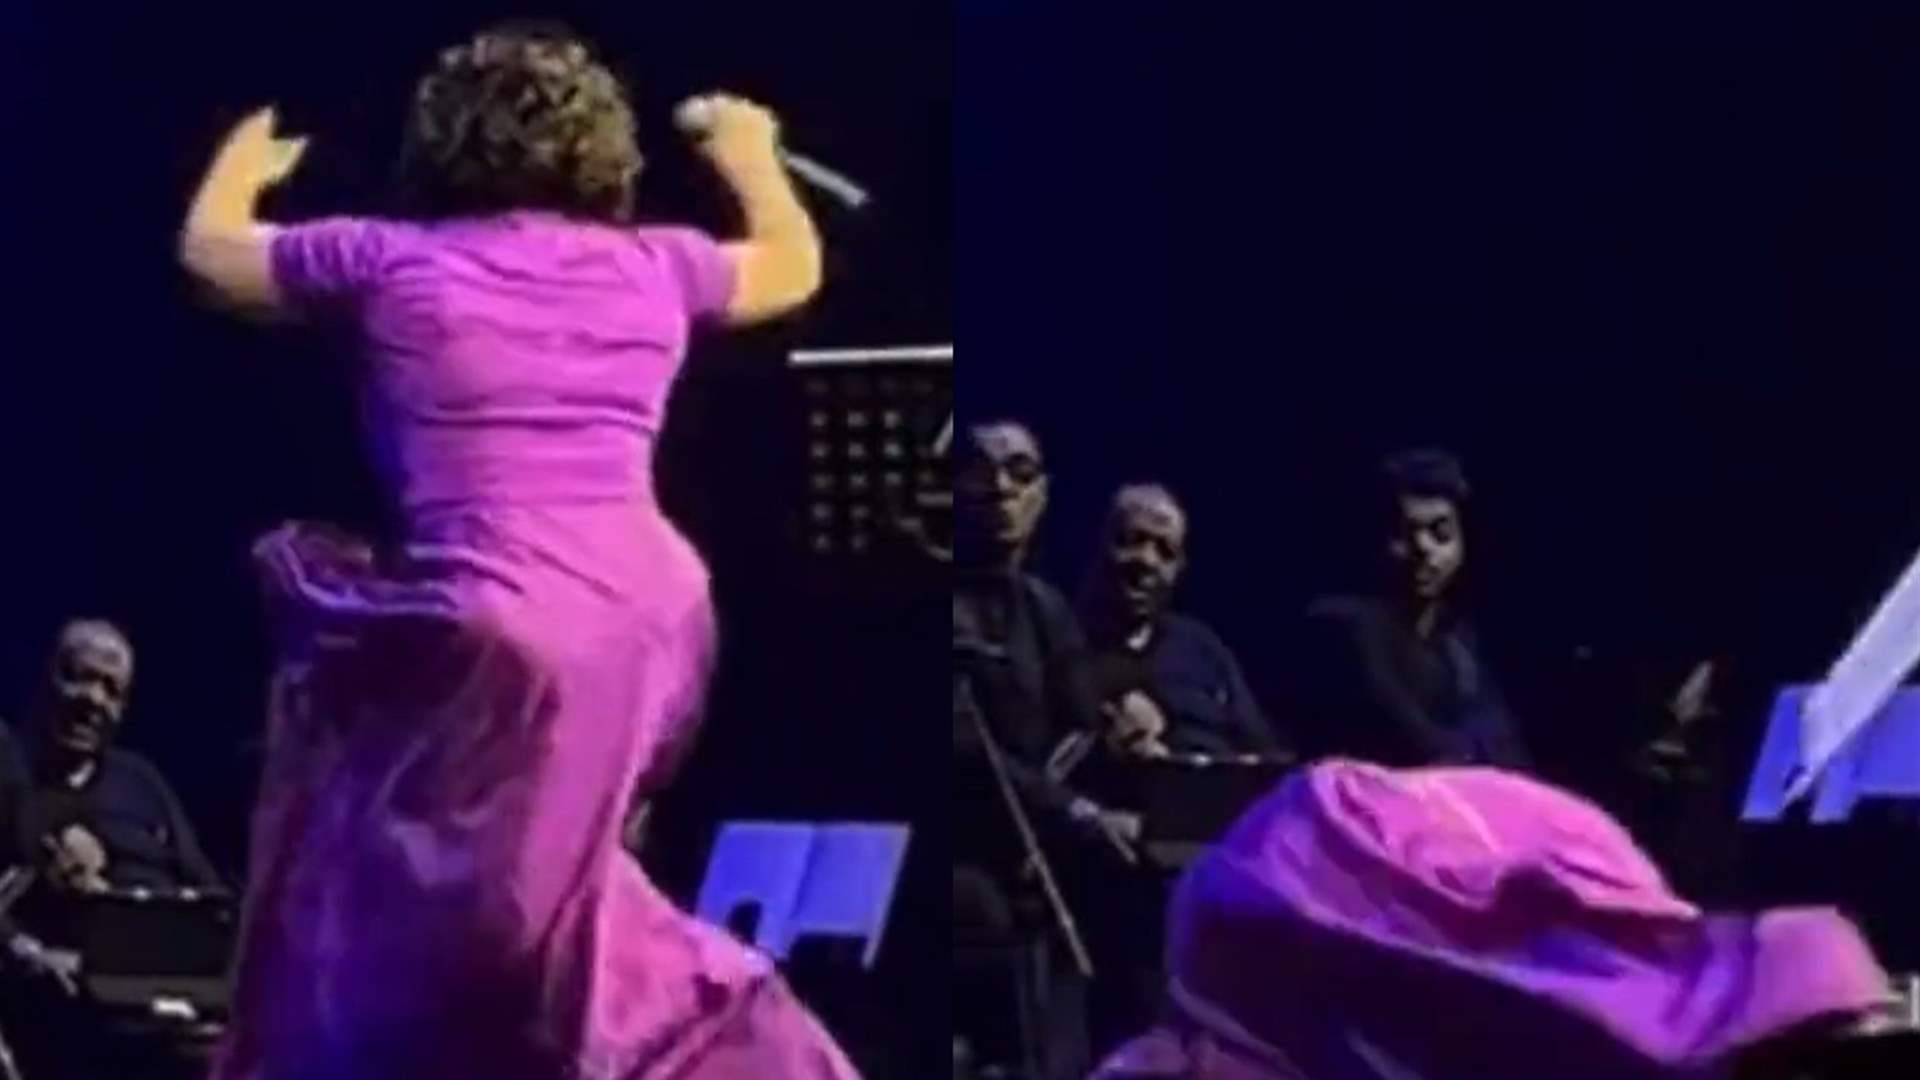 سقوط شيرين عبد الوهاب على المسرح في أوّل حفلٍ لها بعد غياب (فيديو)